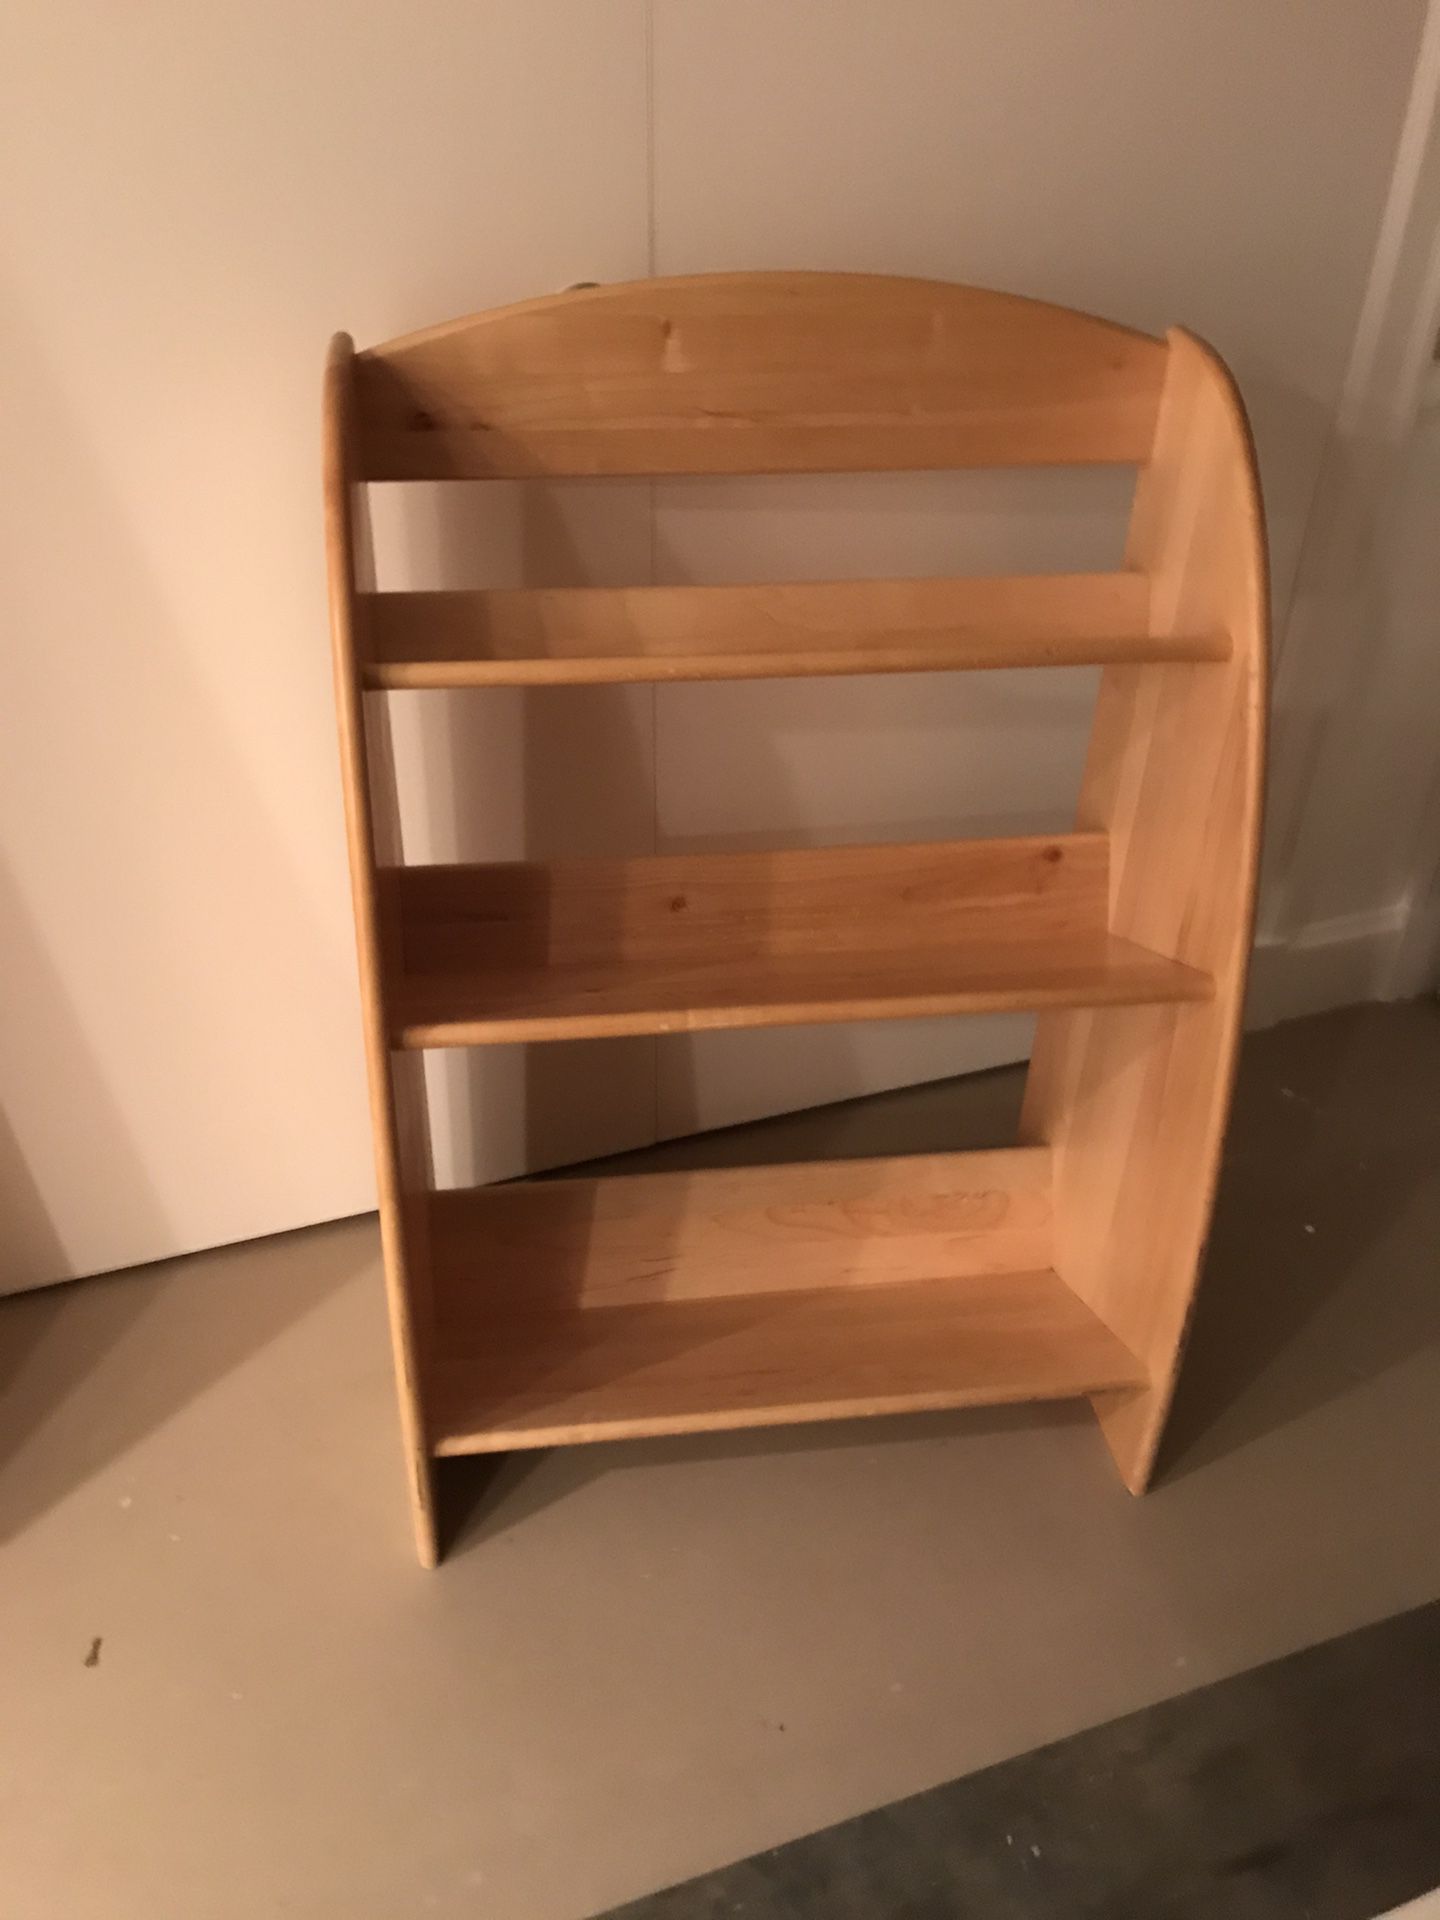 Solid wood bookshelf.